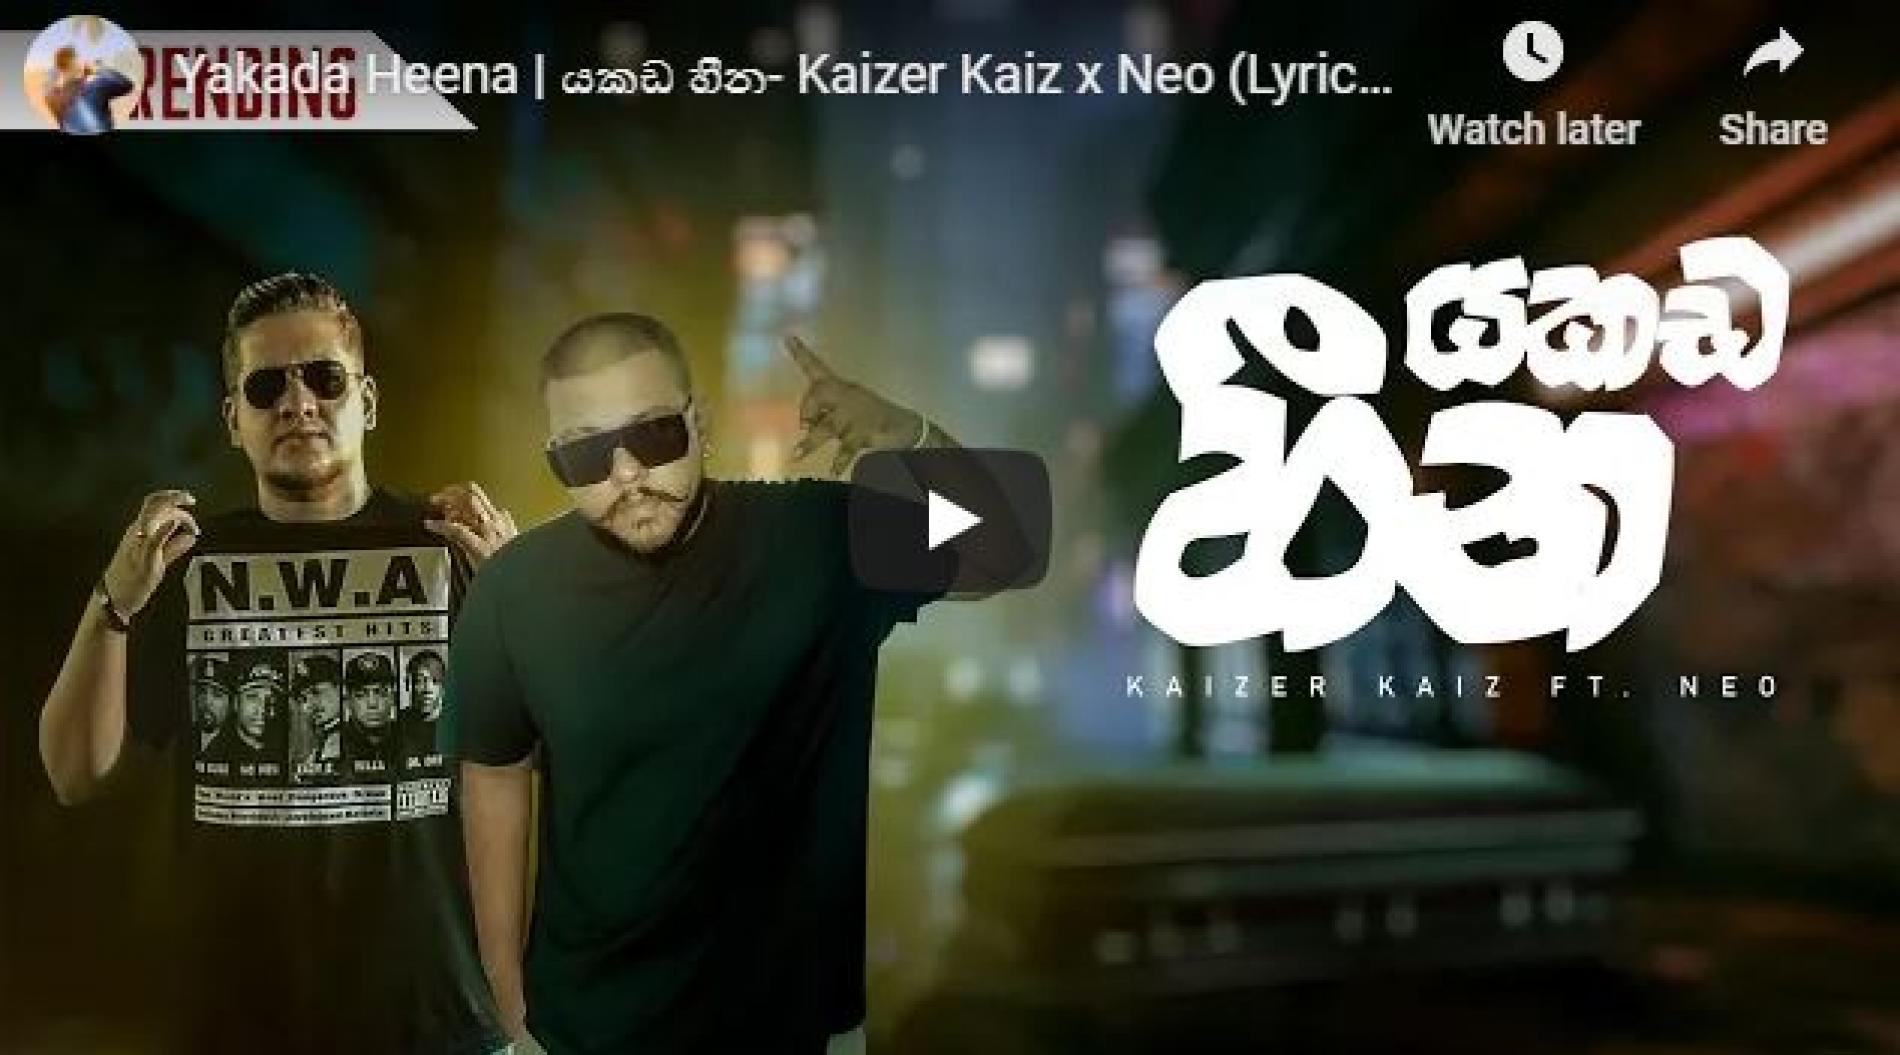 New Music : Yakada Heena | යකඩ හීන- Kaizer Kaiz x Neo (Lyrics Video)